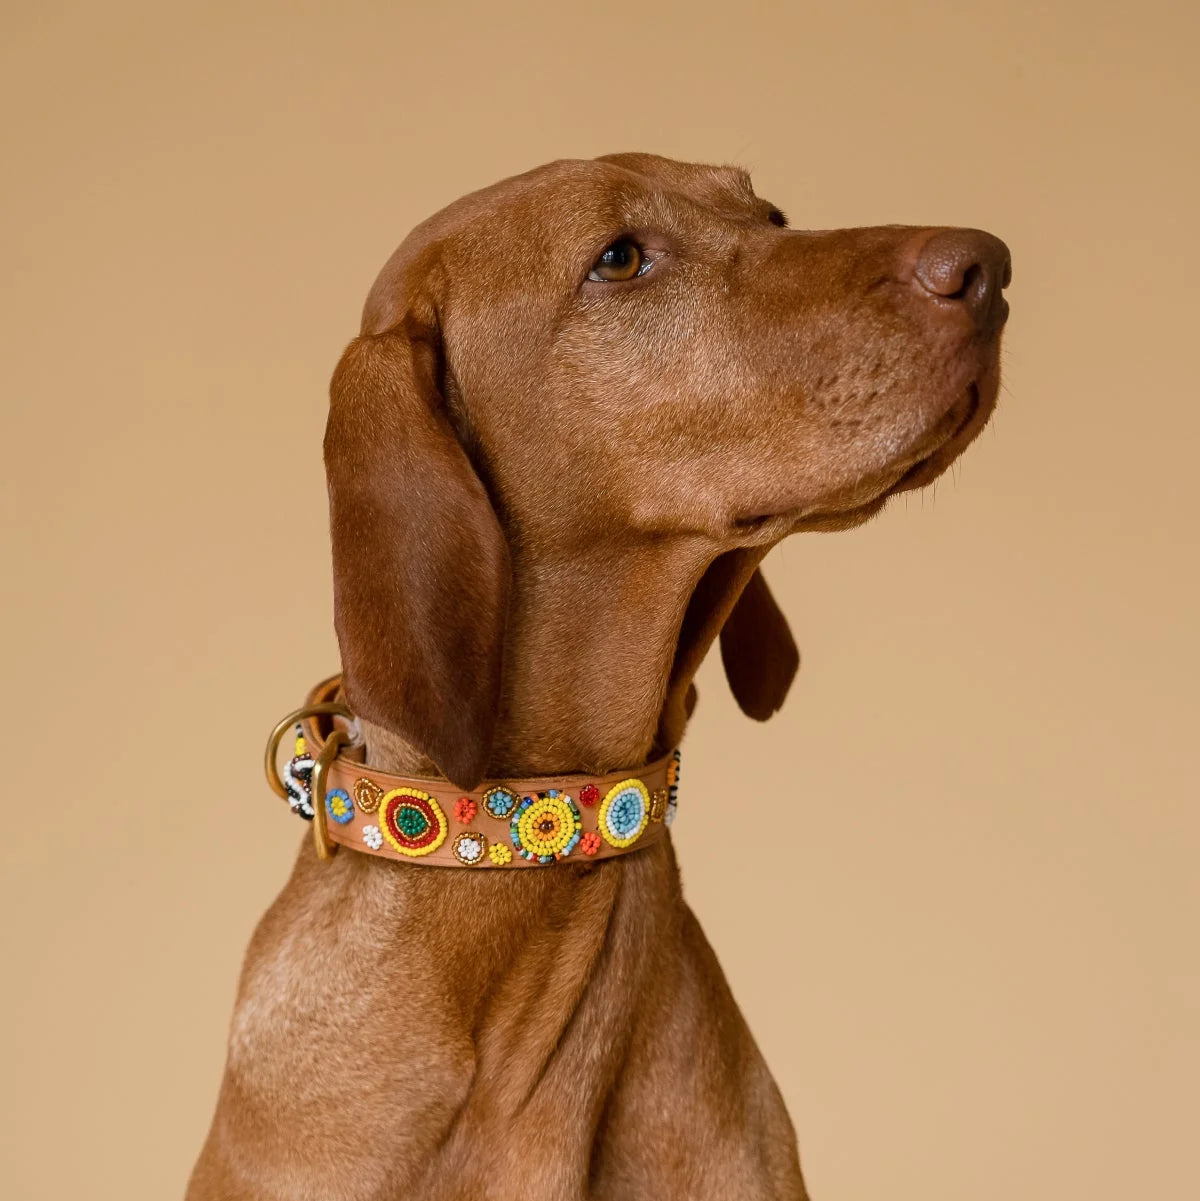 34 Hundehalsband-Ideen  hundehalsband, halsband, hunde